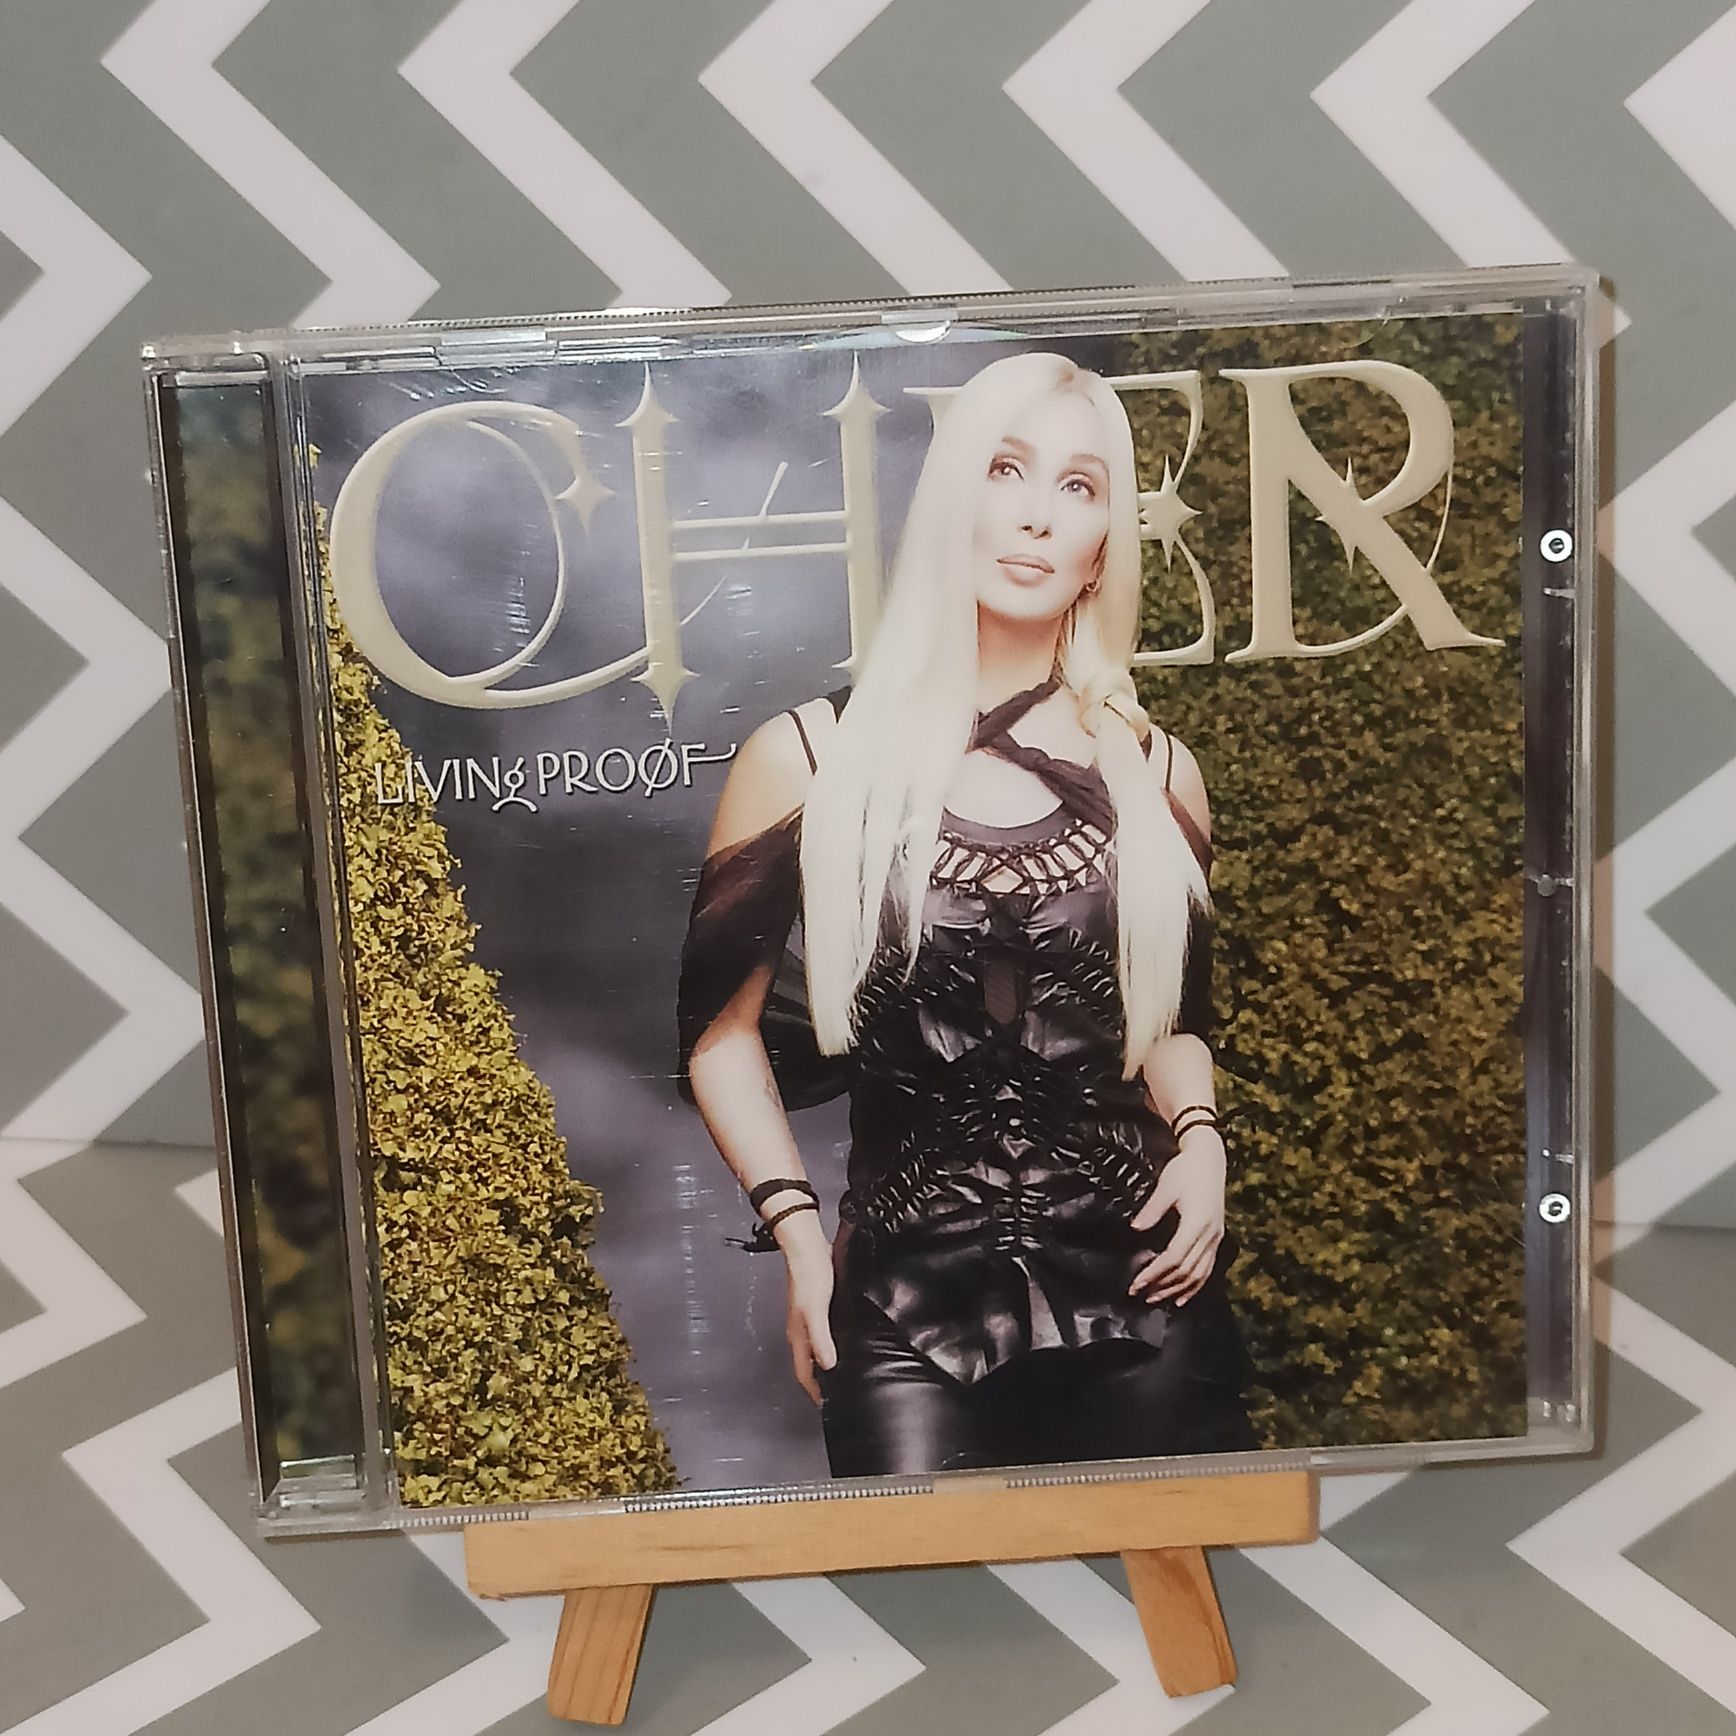 Cher living proof Płyta CD Muzyka Pop płyty Cd Okazja Tanio